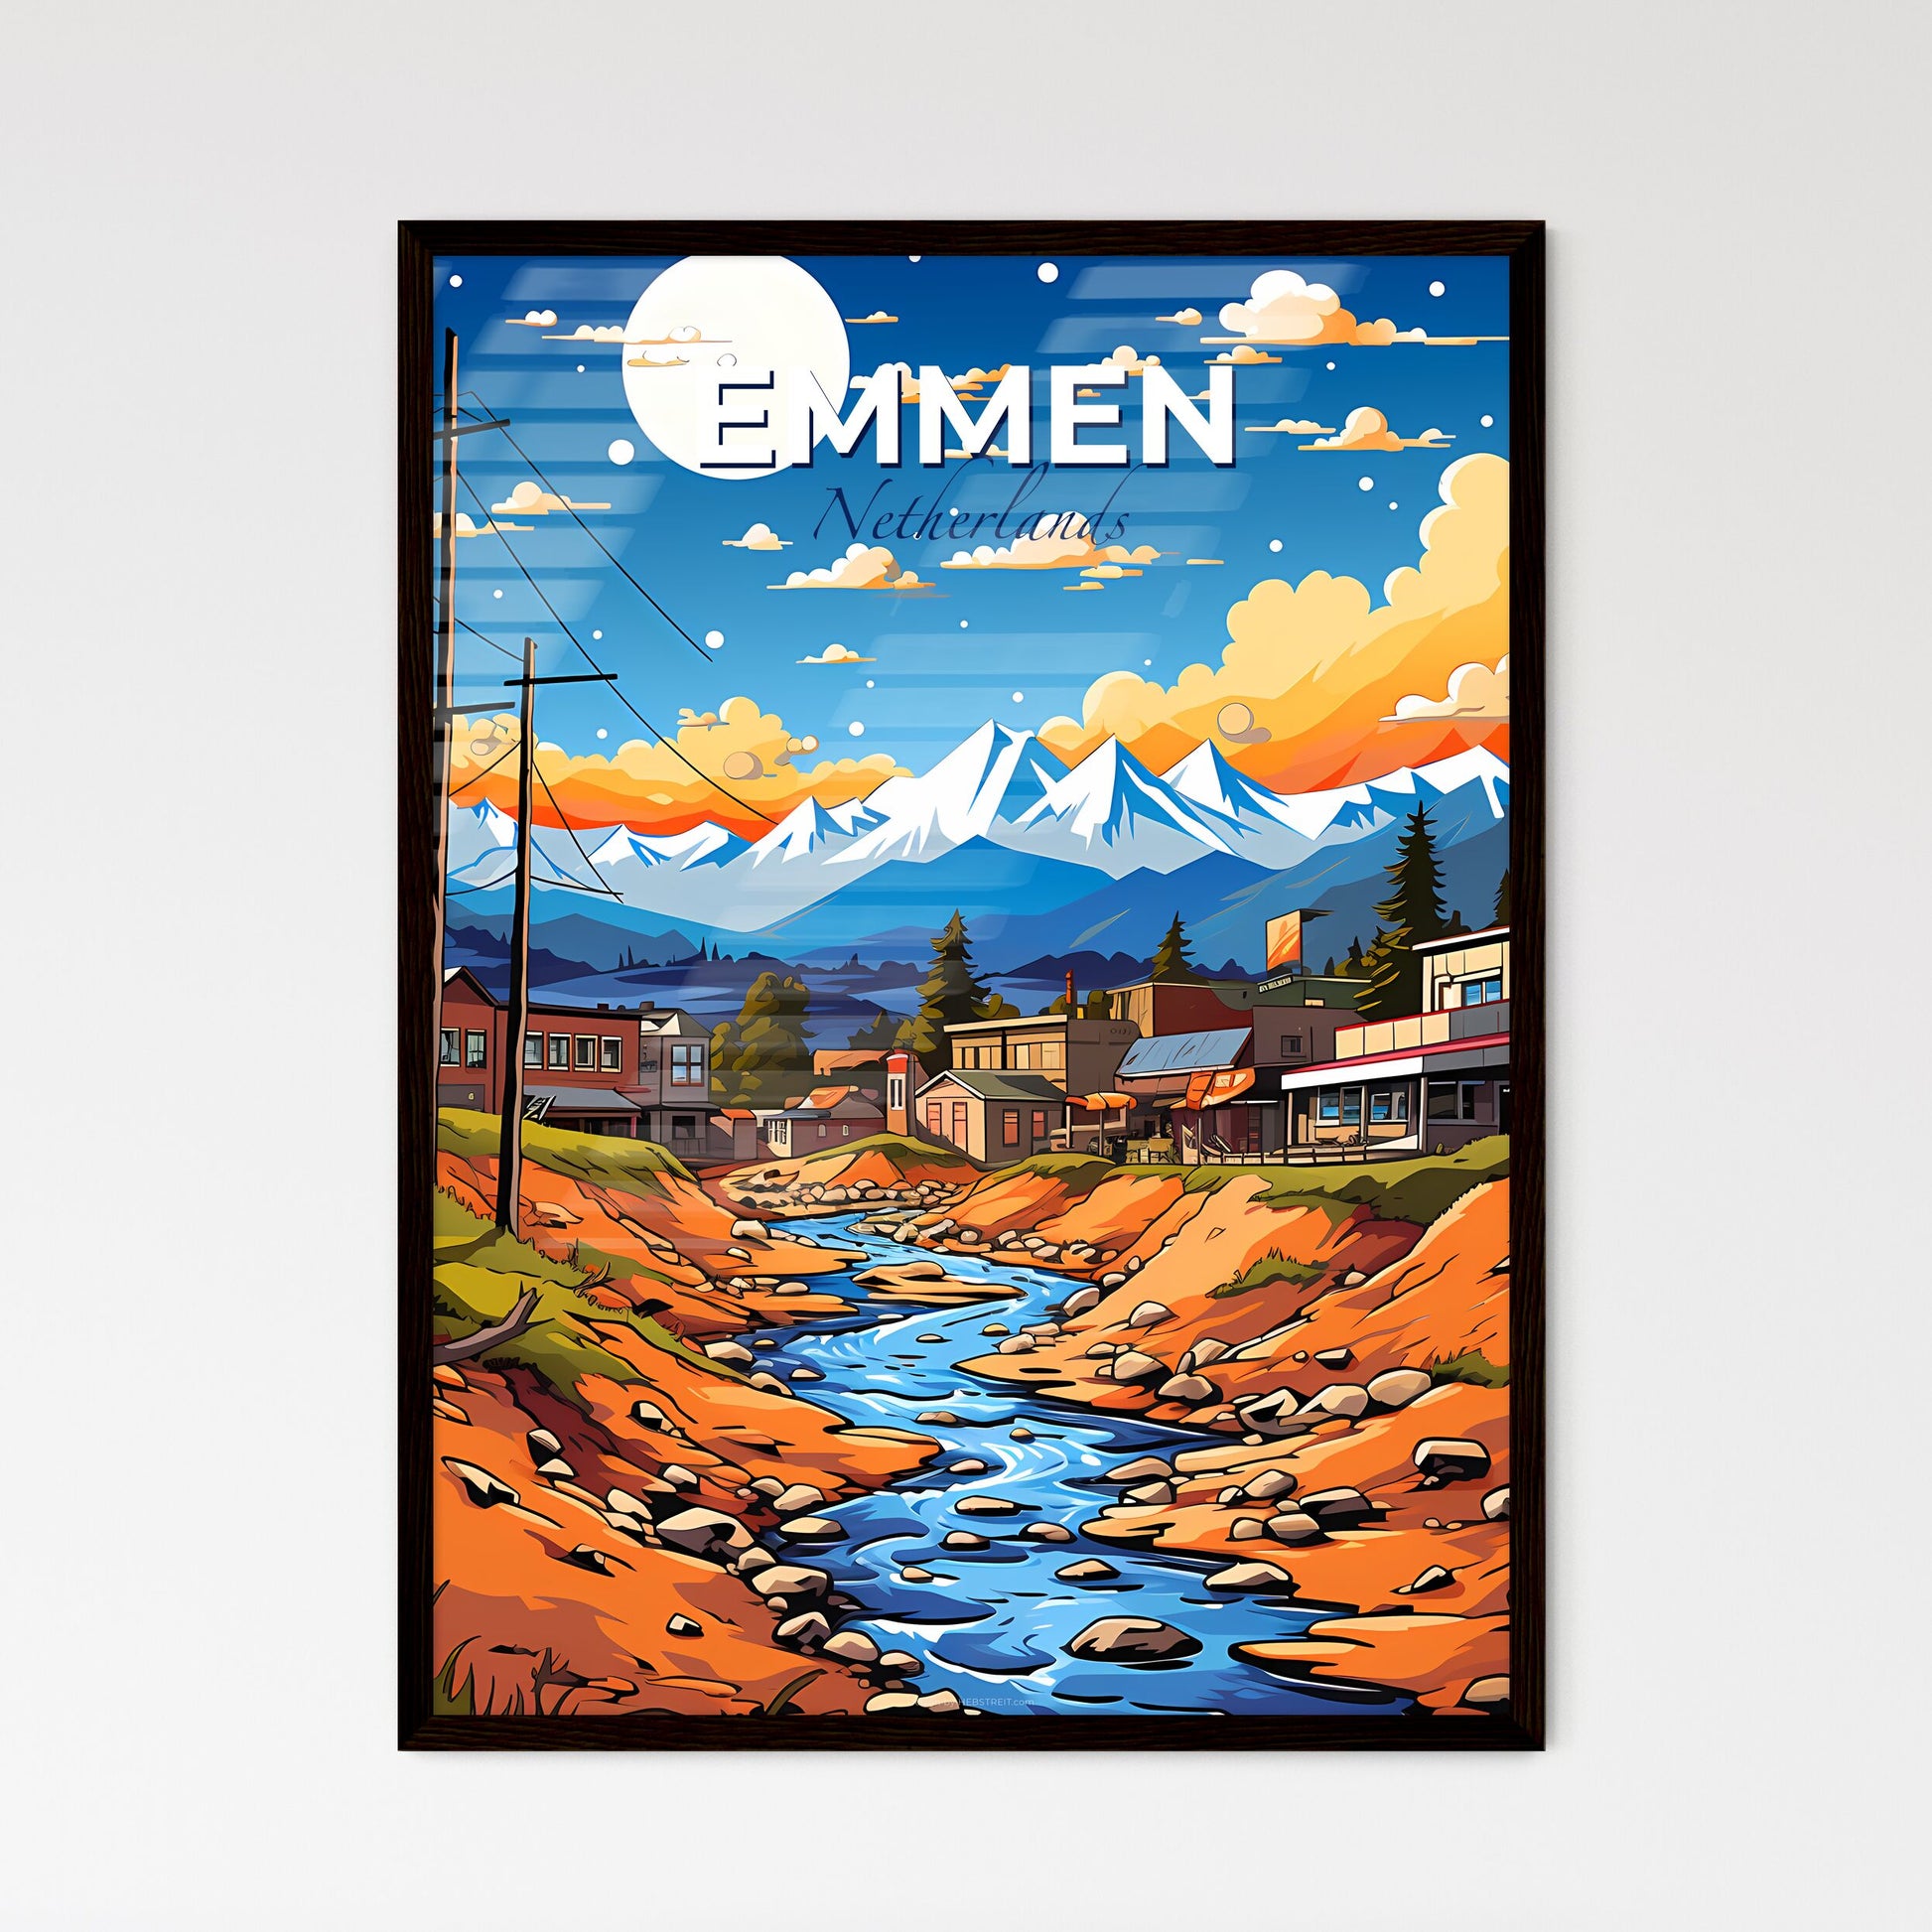 Emmen, Netherlands, A Poster of a river running through a town Default Title